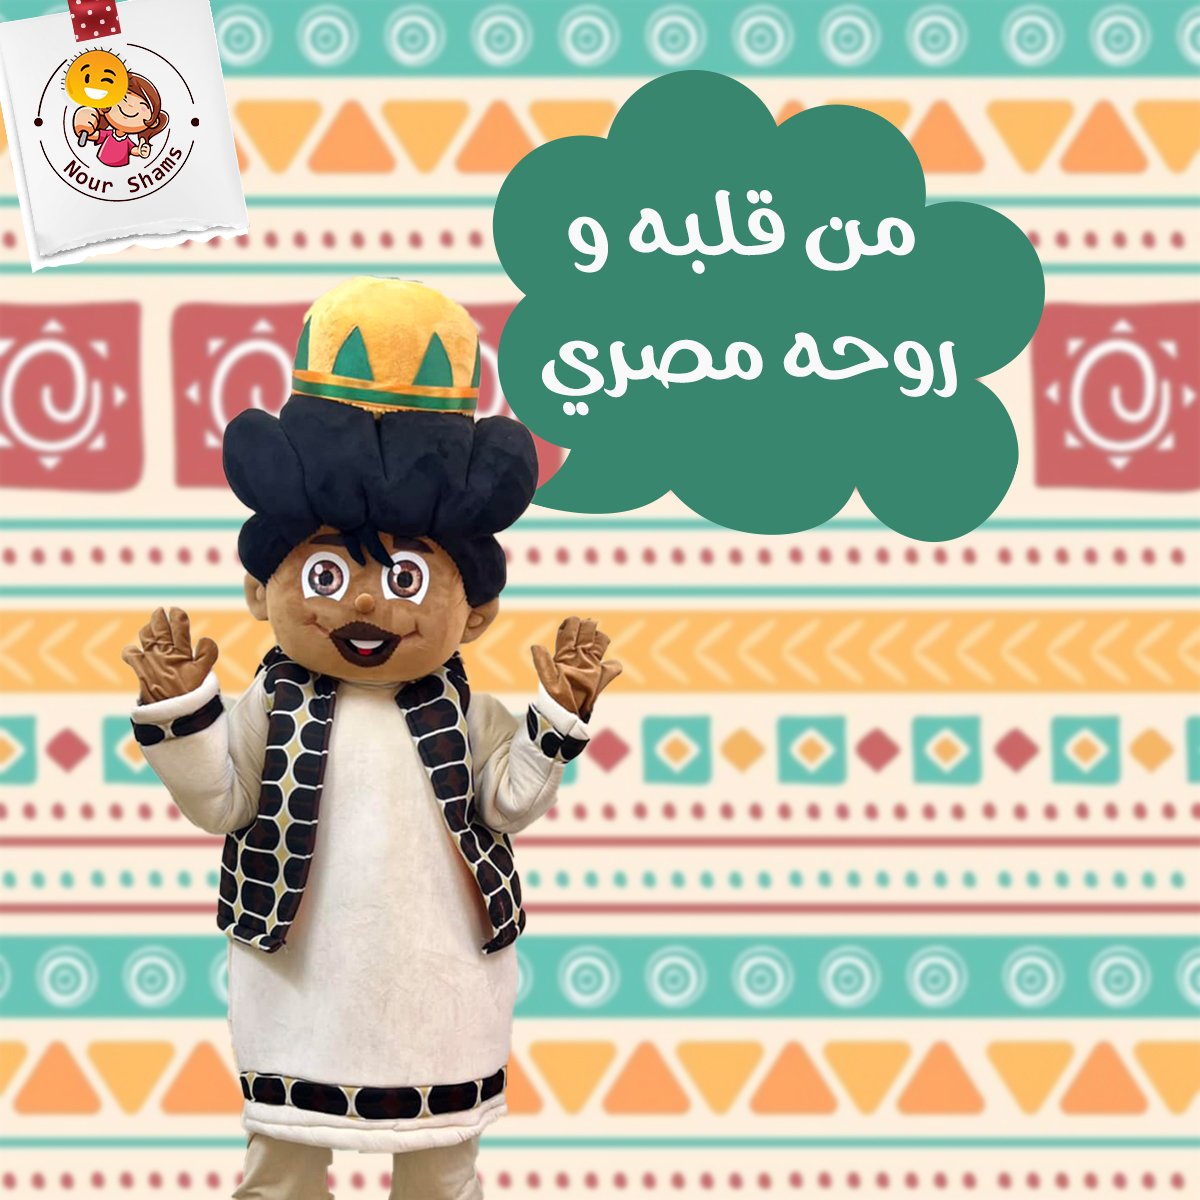 Nour Shams Mascots Social Media Marketing